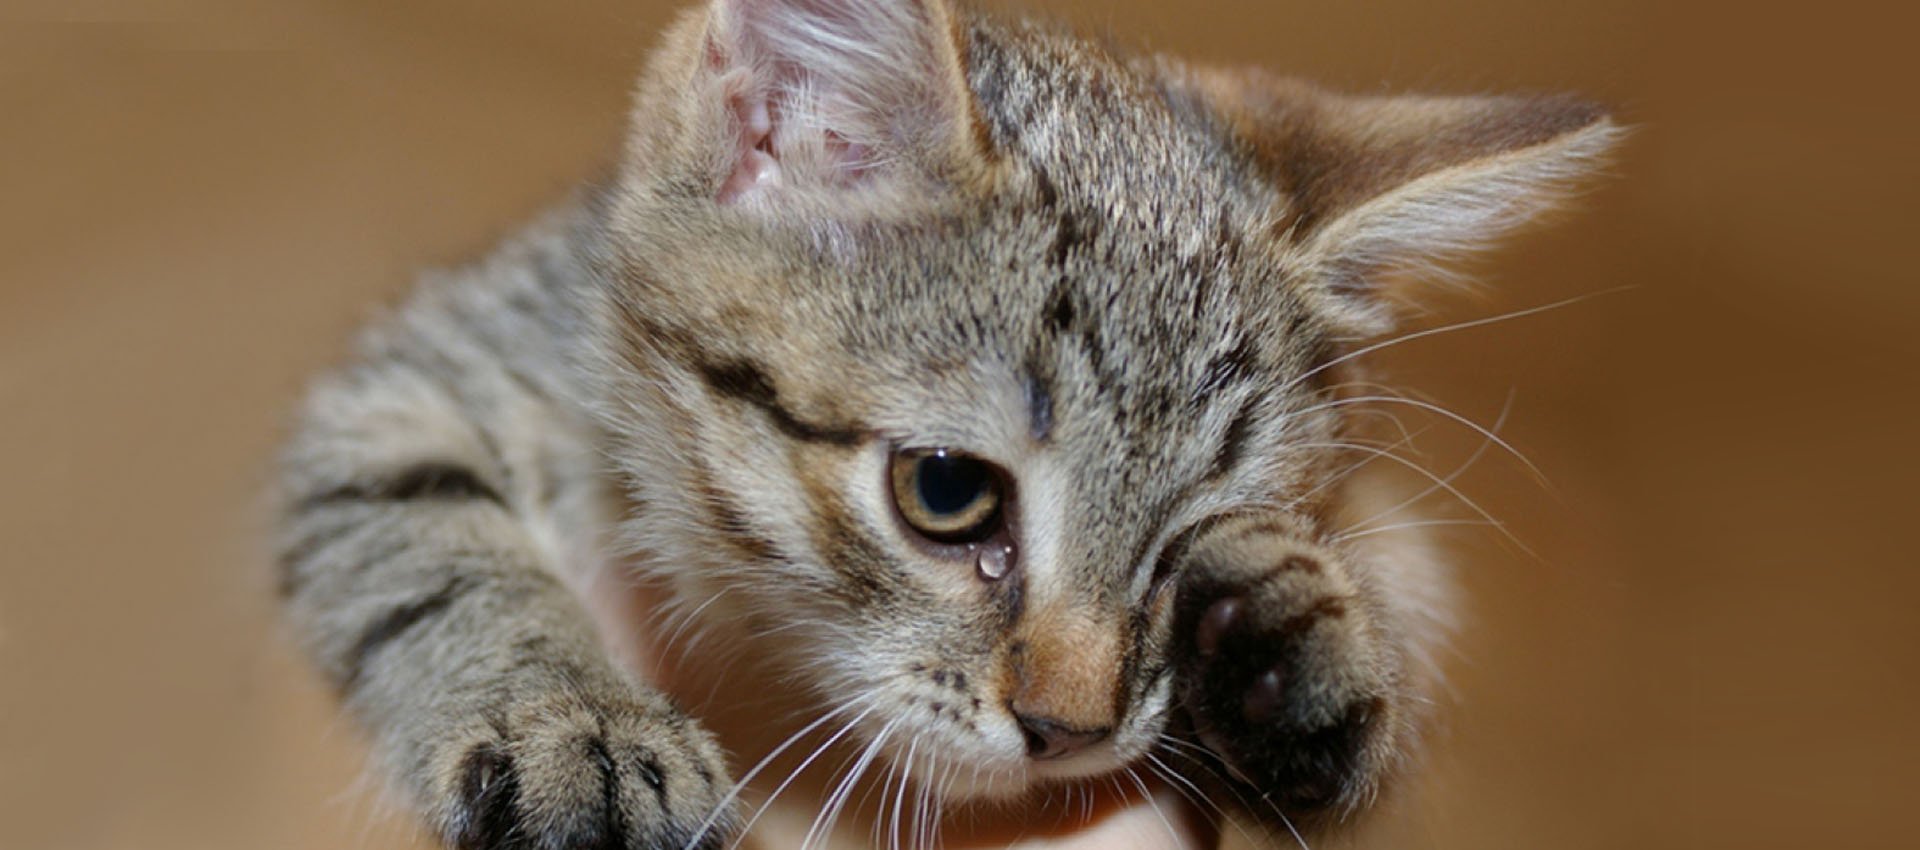 Плачут ли кошки - патология или эмоциональное проявление